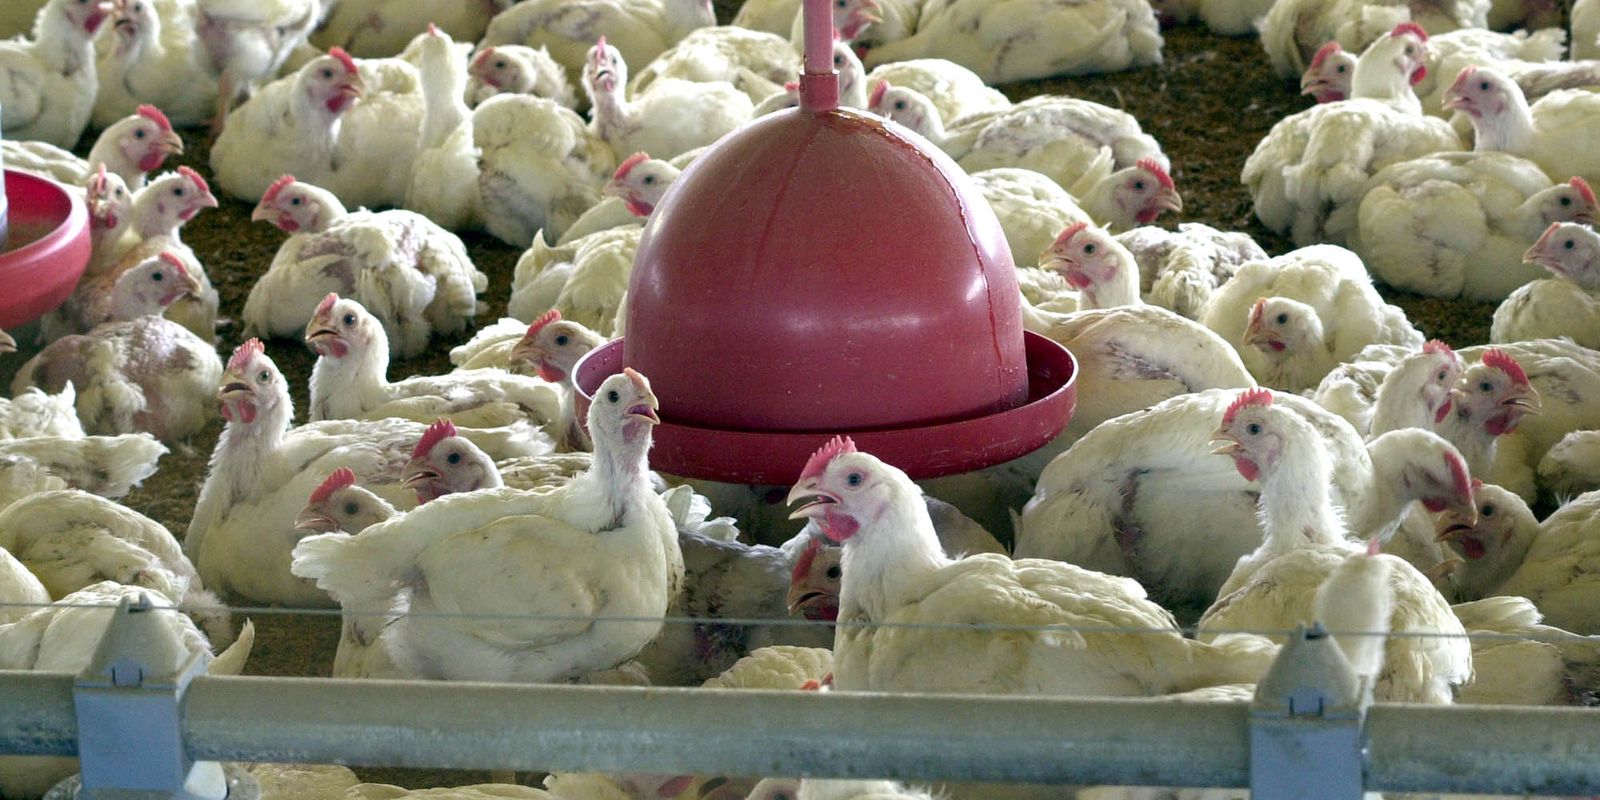 Argélia abre mercado para carne de frango do Brasil, diz Itamaraty – finanças brasil